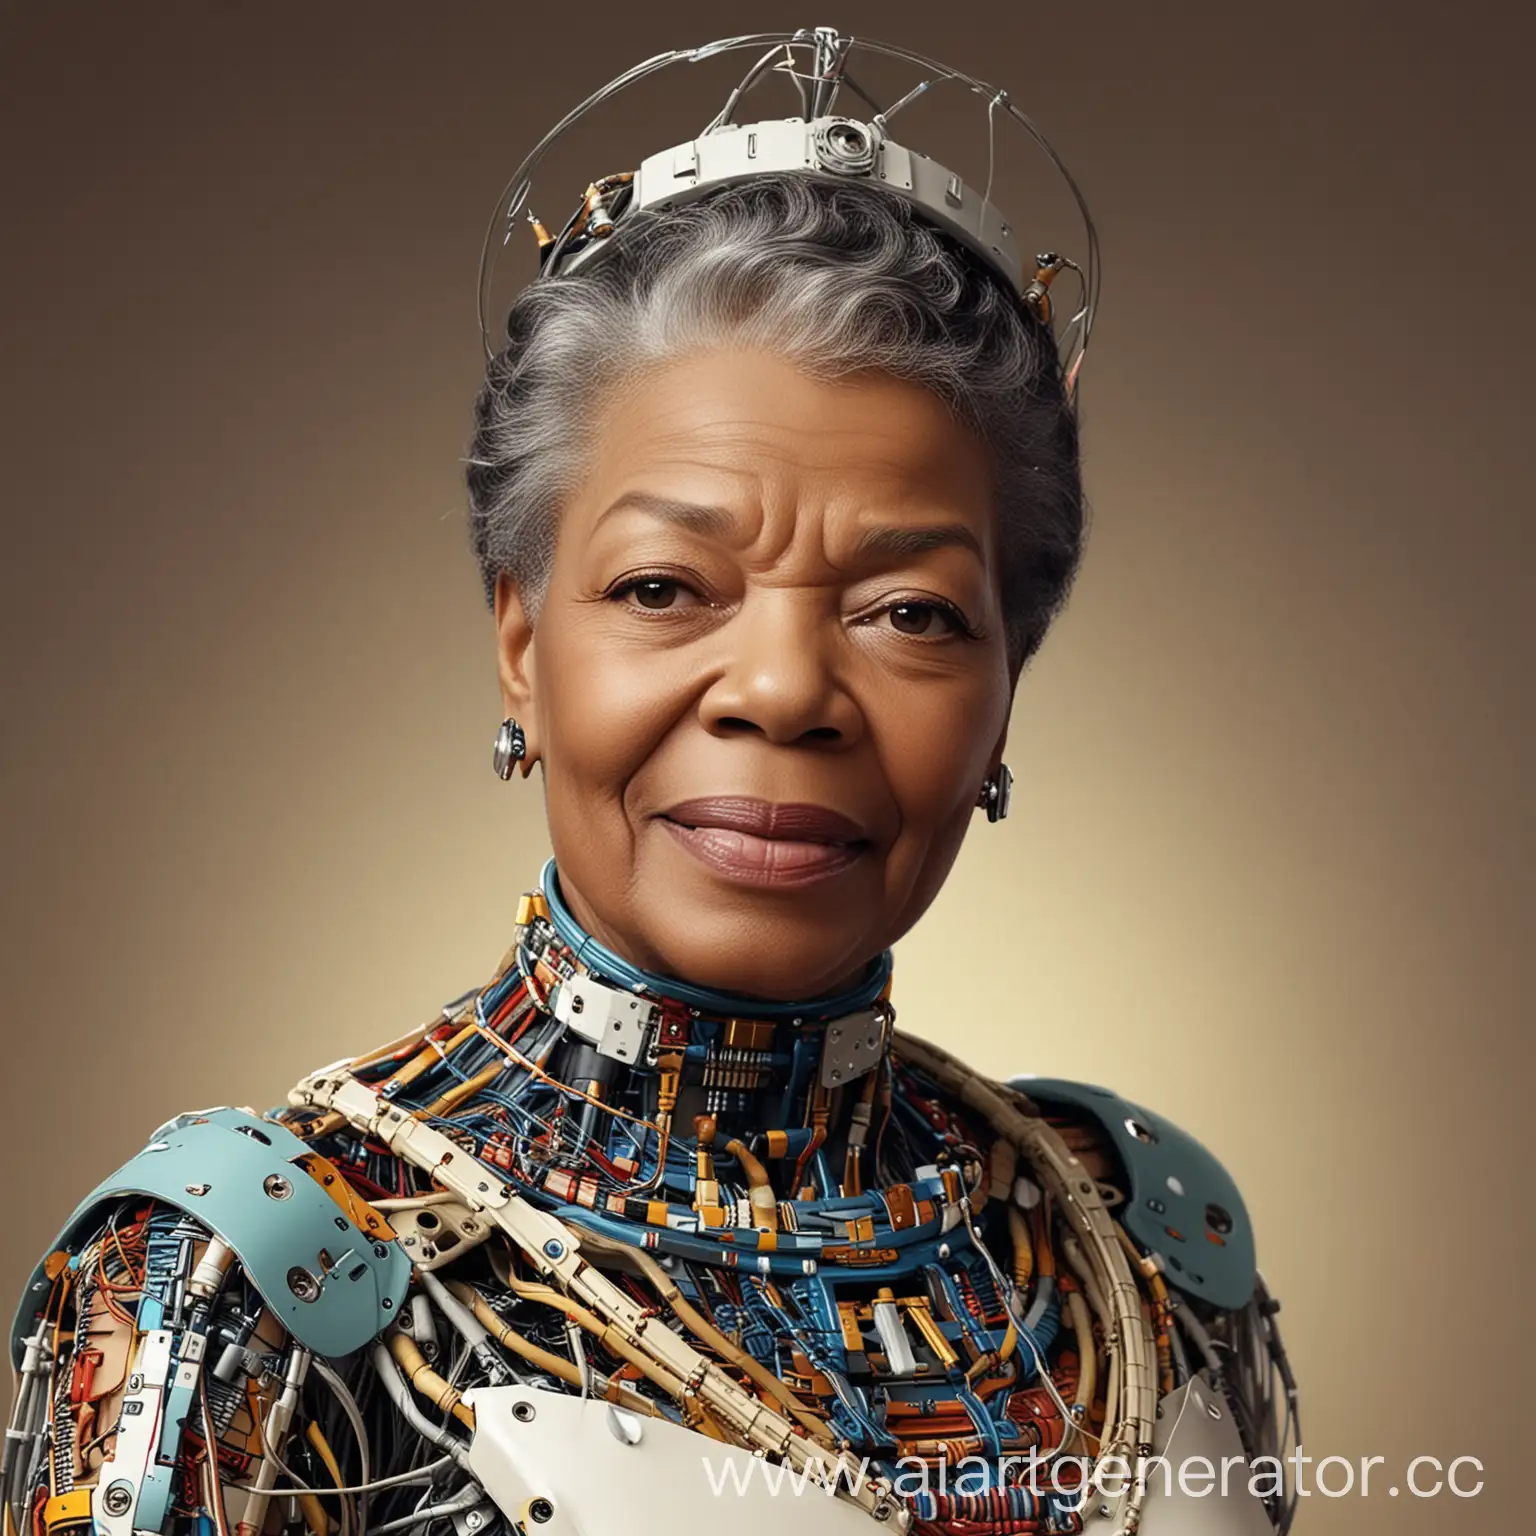 Maya Angelou if she was a cyborg